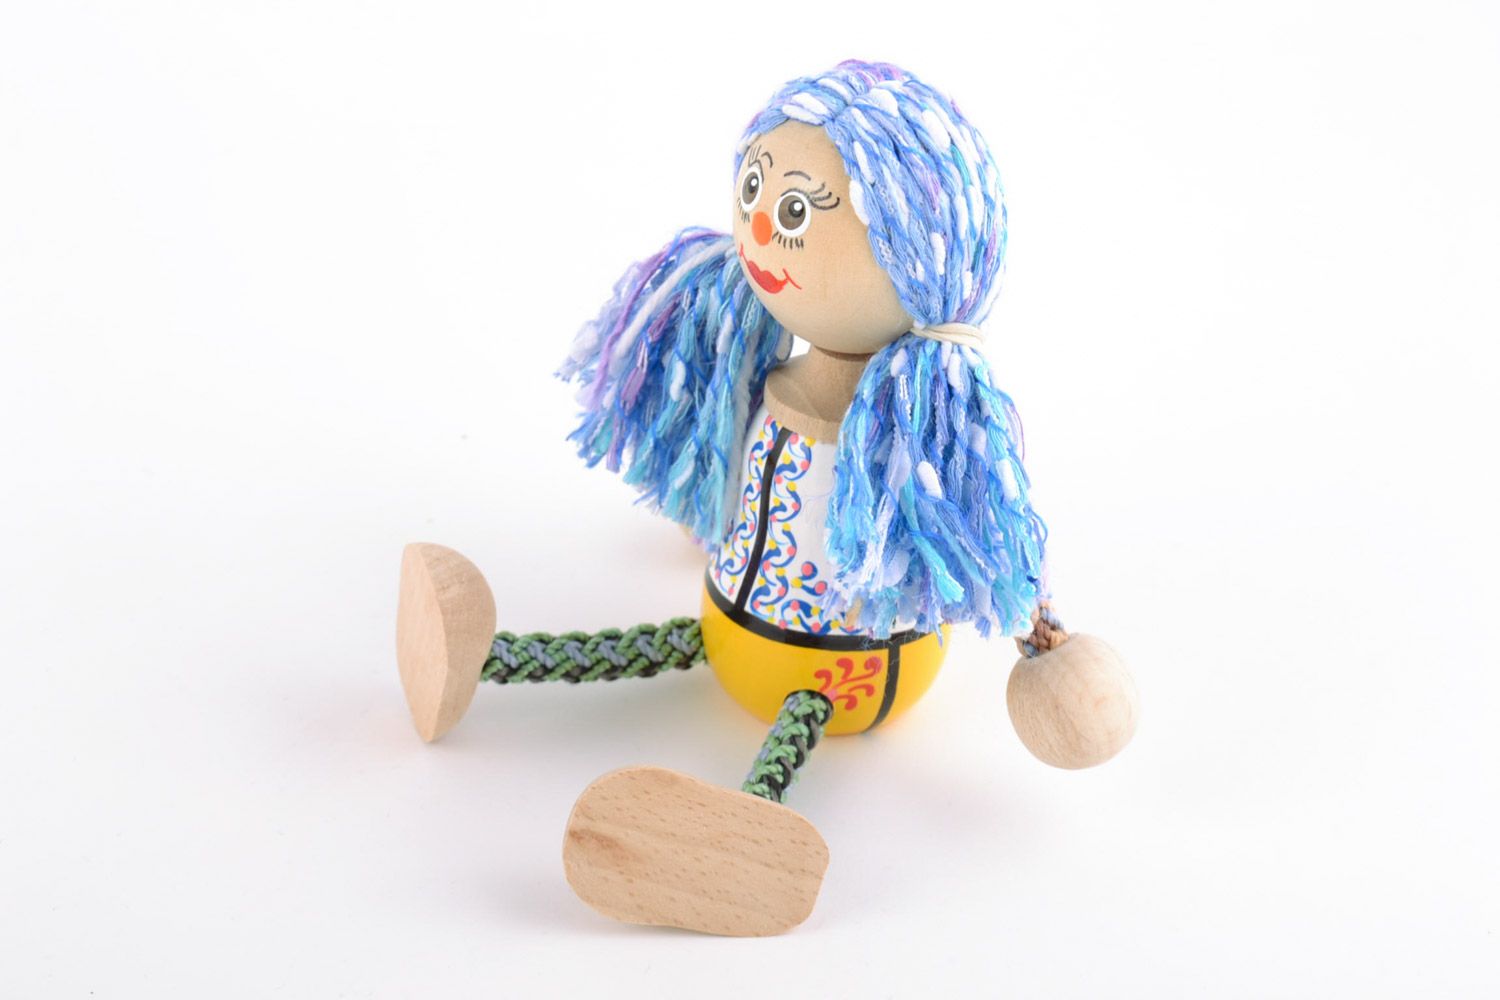 Öko Spielzeug aus Holz handmade umweltfreundlich künstlerisch Mädchen mit blauem Haar foto 4